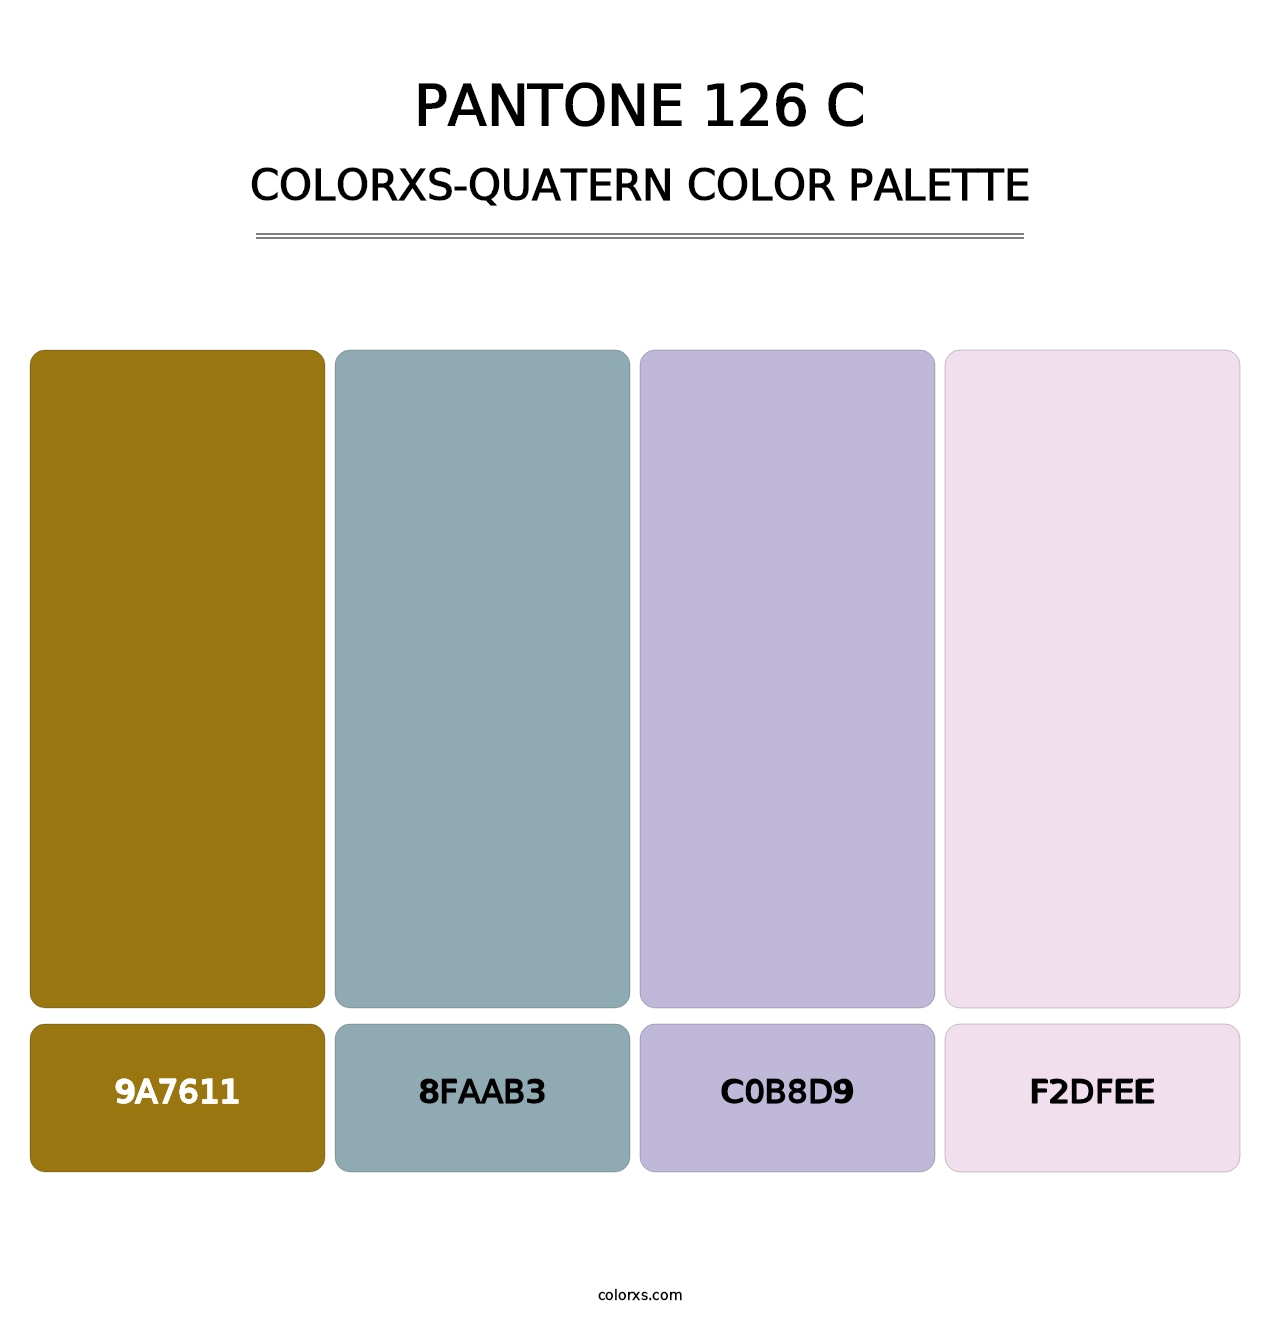 PANTONE 126 C - Colorxs Quatern Palette